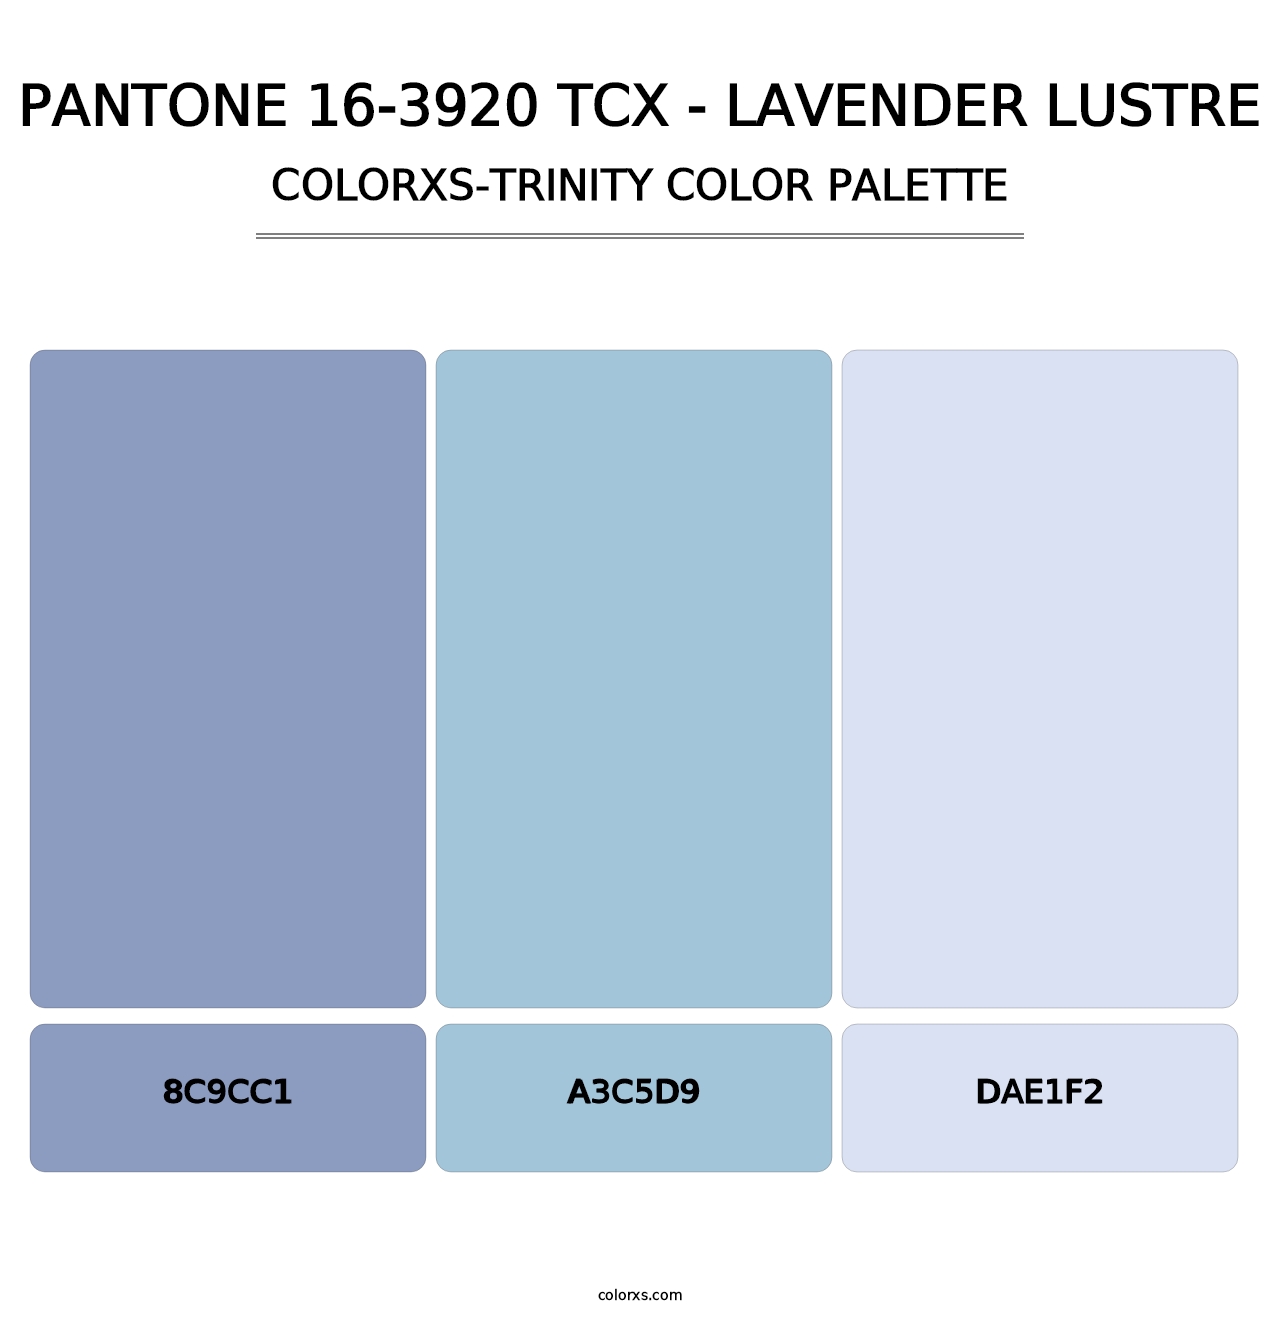 PANTONE 16-3920 TCX - Lavender Lustre - Colorxs Trinity Palette